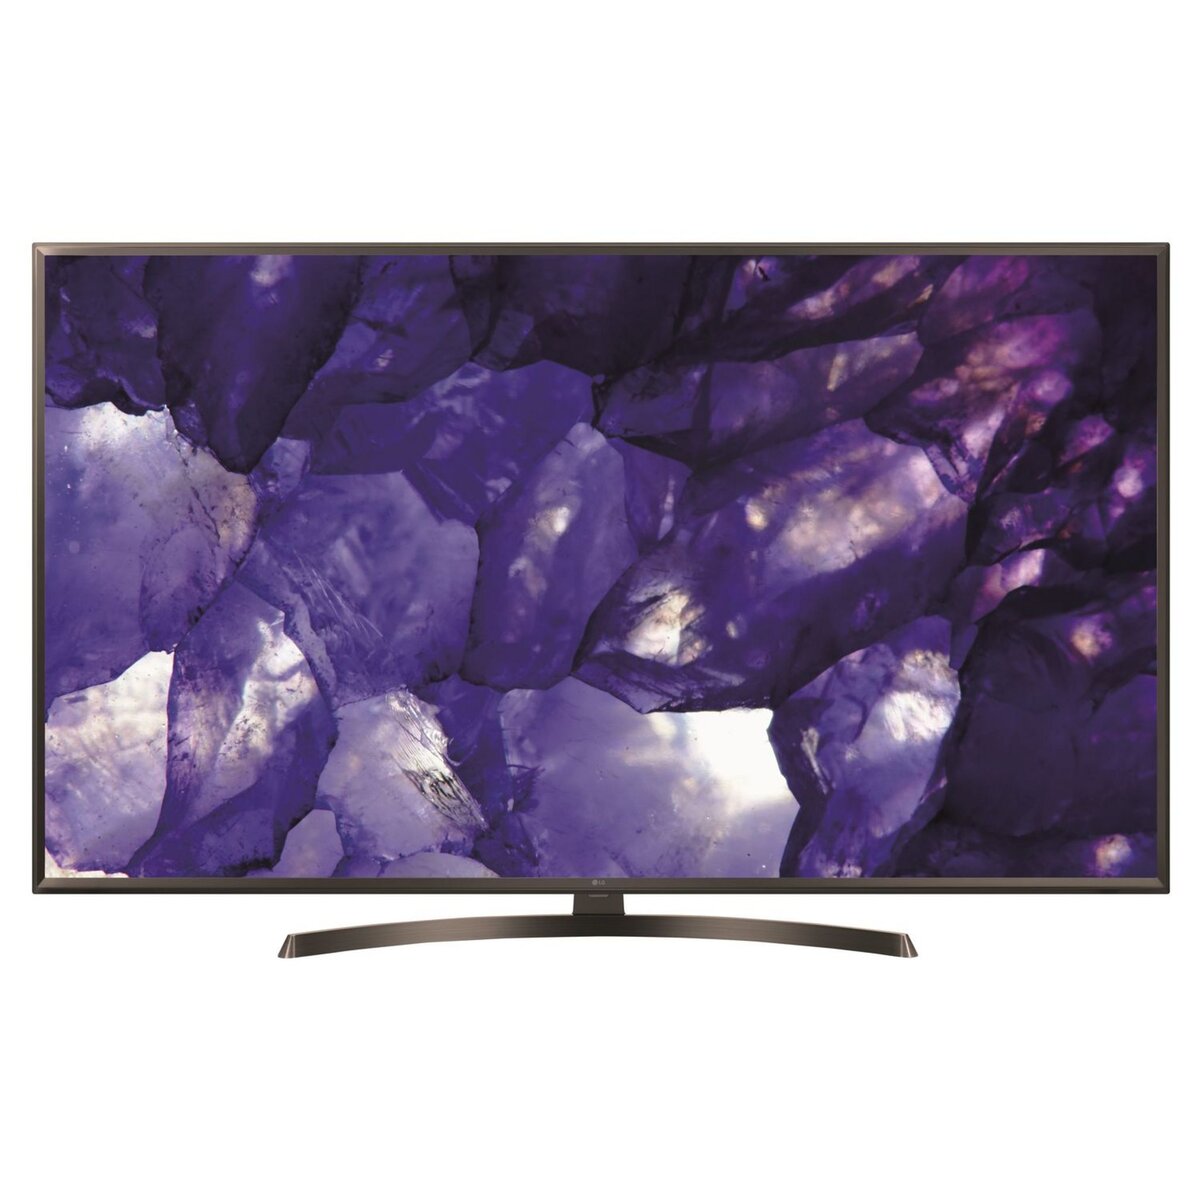 LG 65UK6400 TV LED 4K UHD 164 cm HDR Smart TV